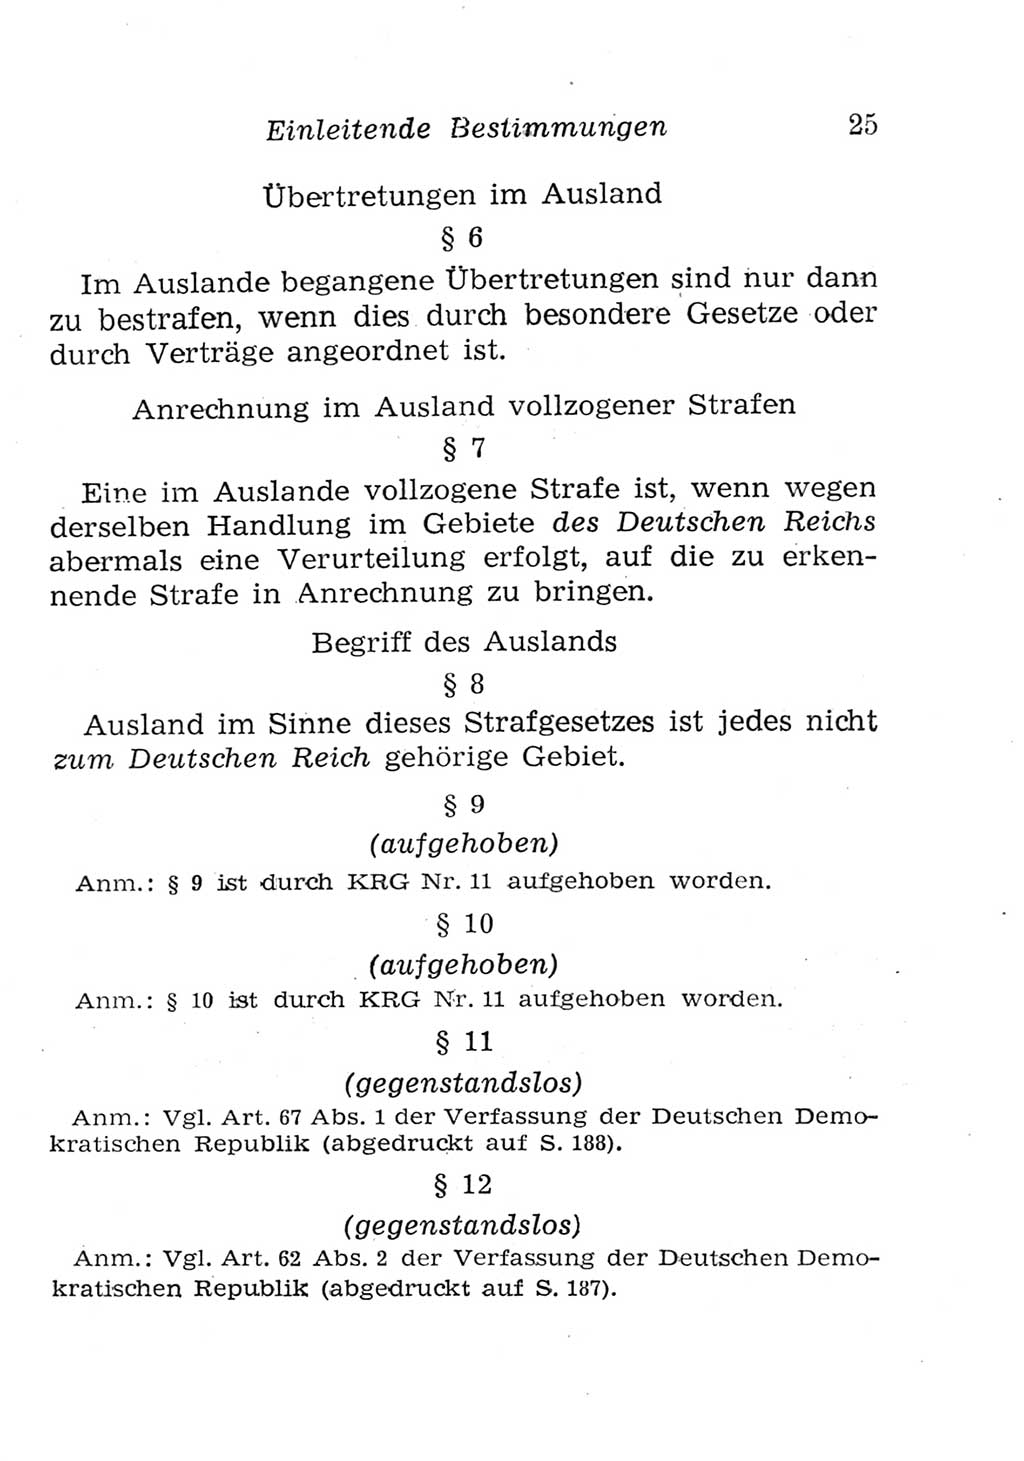 Strafgesetzbuch (StGB) und andere Strafgesetze [Deutsche Demokratische Republik (DDR)] 1957, Seite 25 (StGB Strafges. DDR 1957, S. 25)